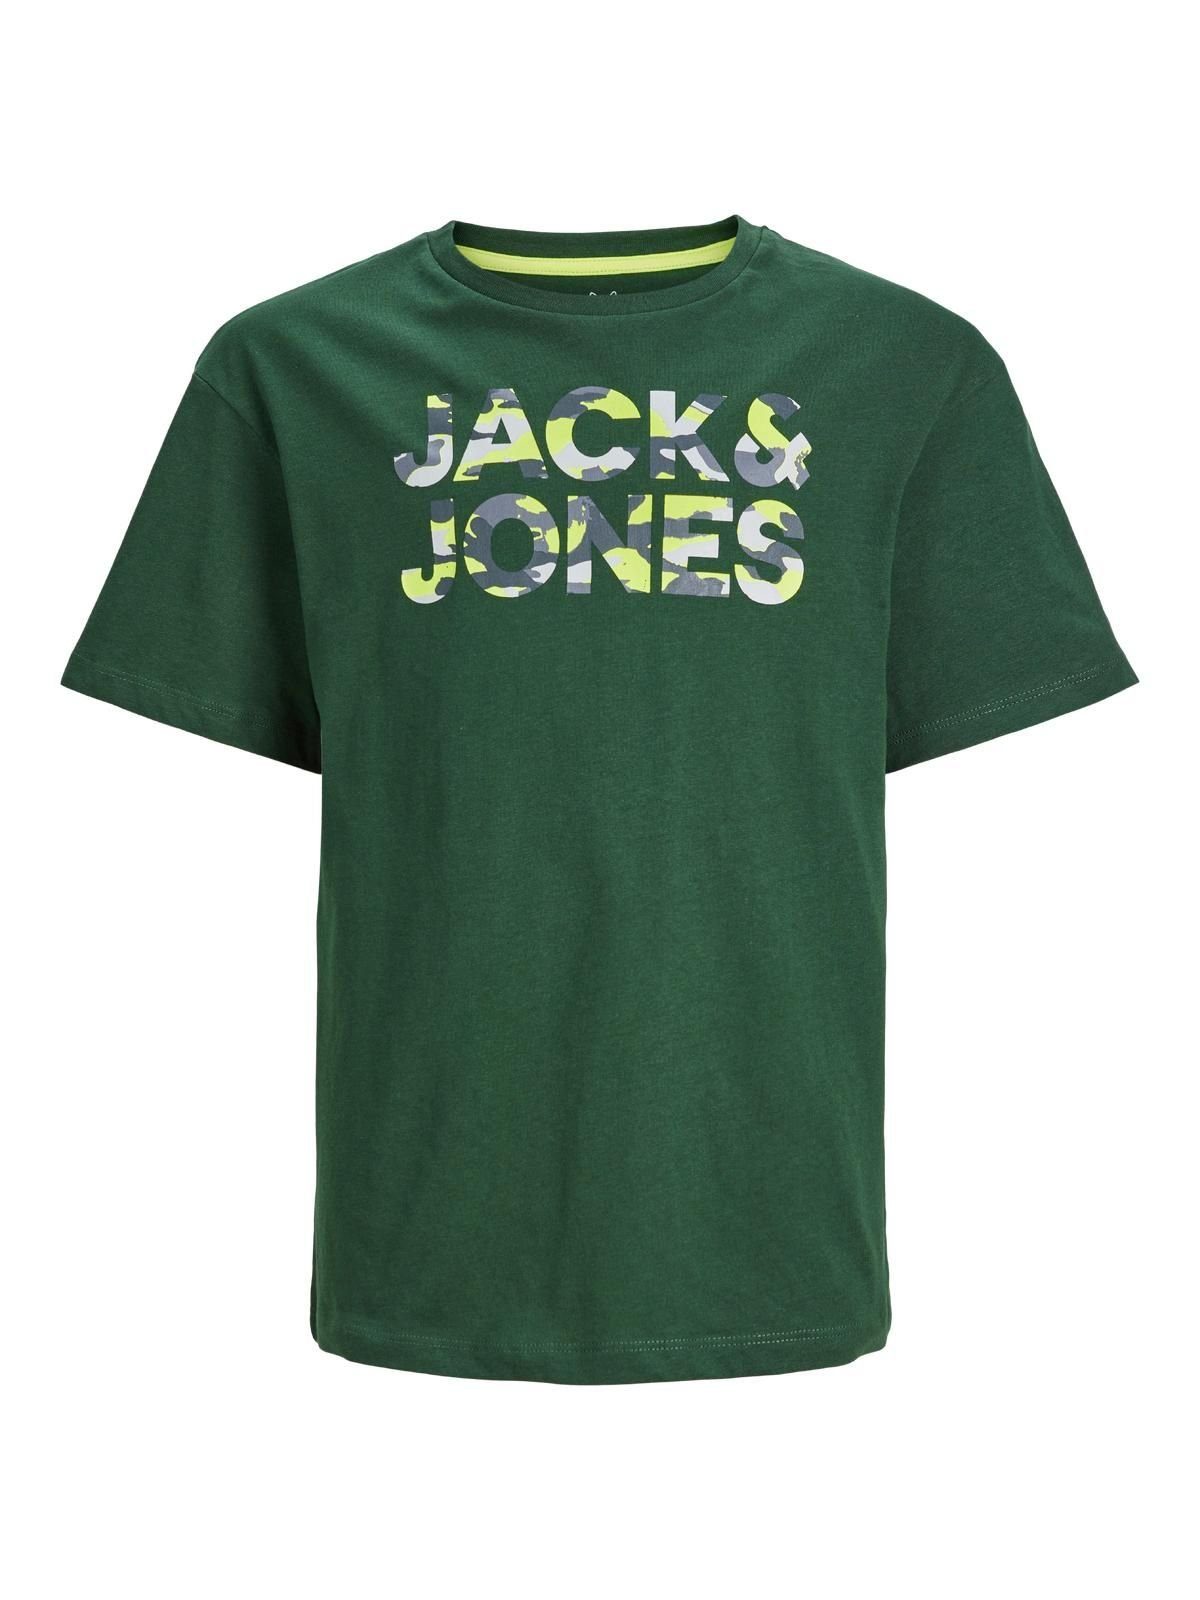 Verkauf neuer Produkte durchgeführt Jack & Jones Junior T-Shirt